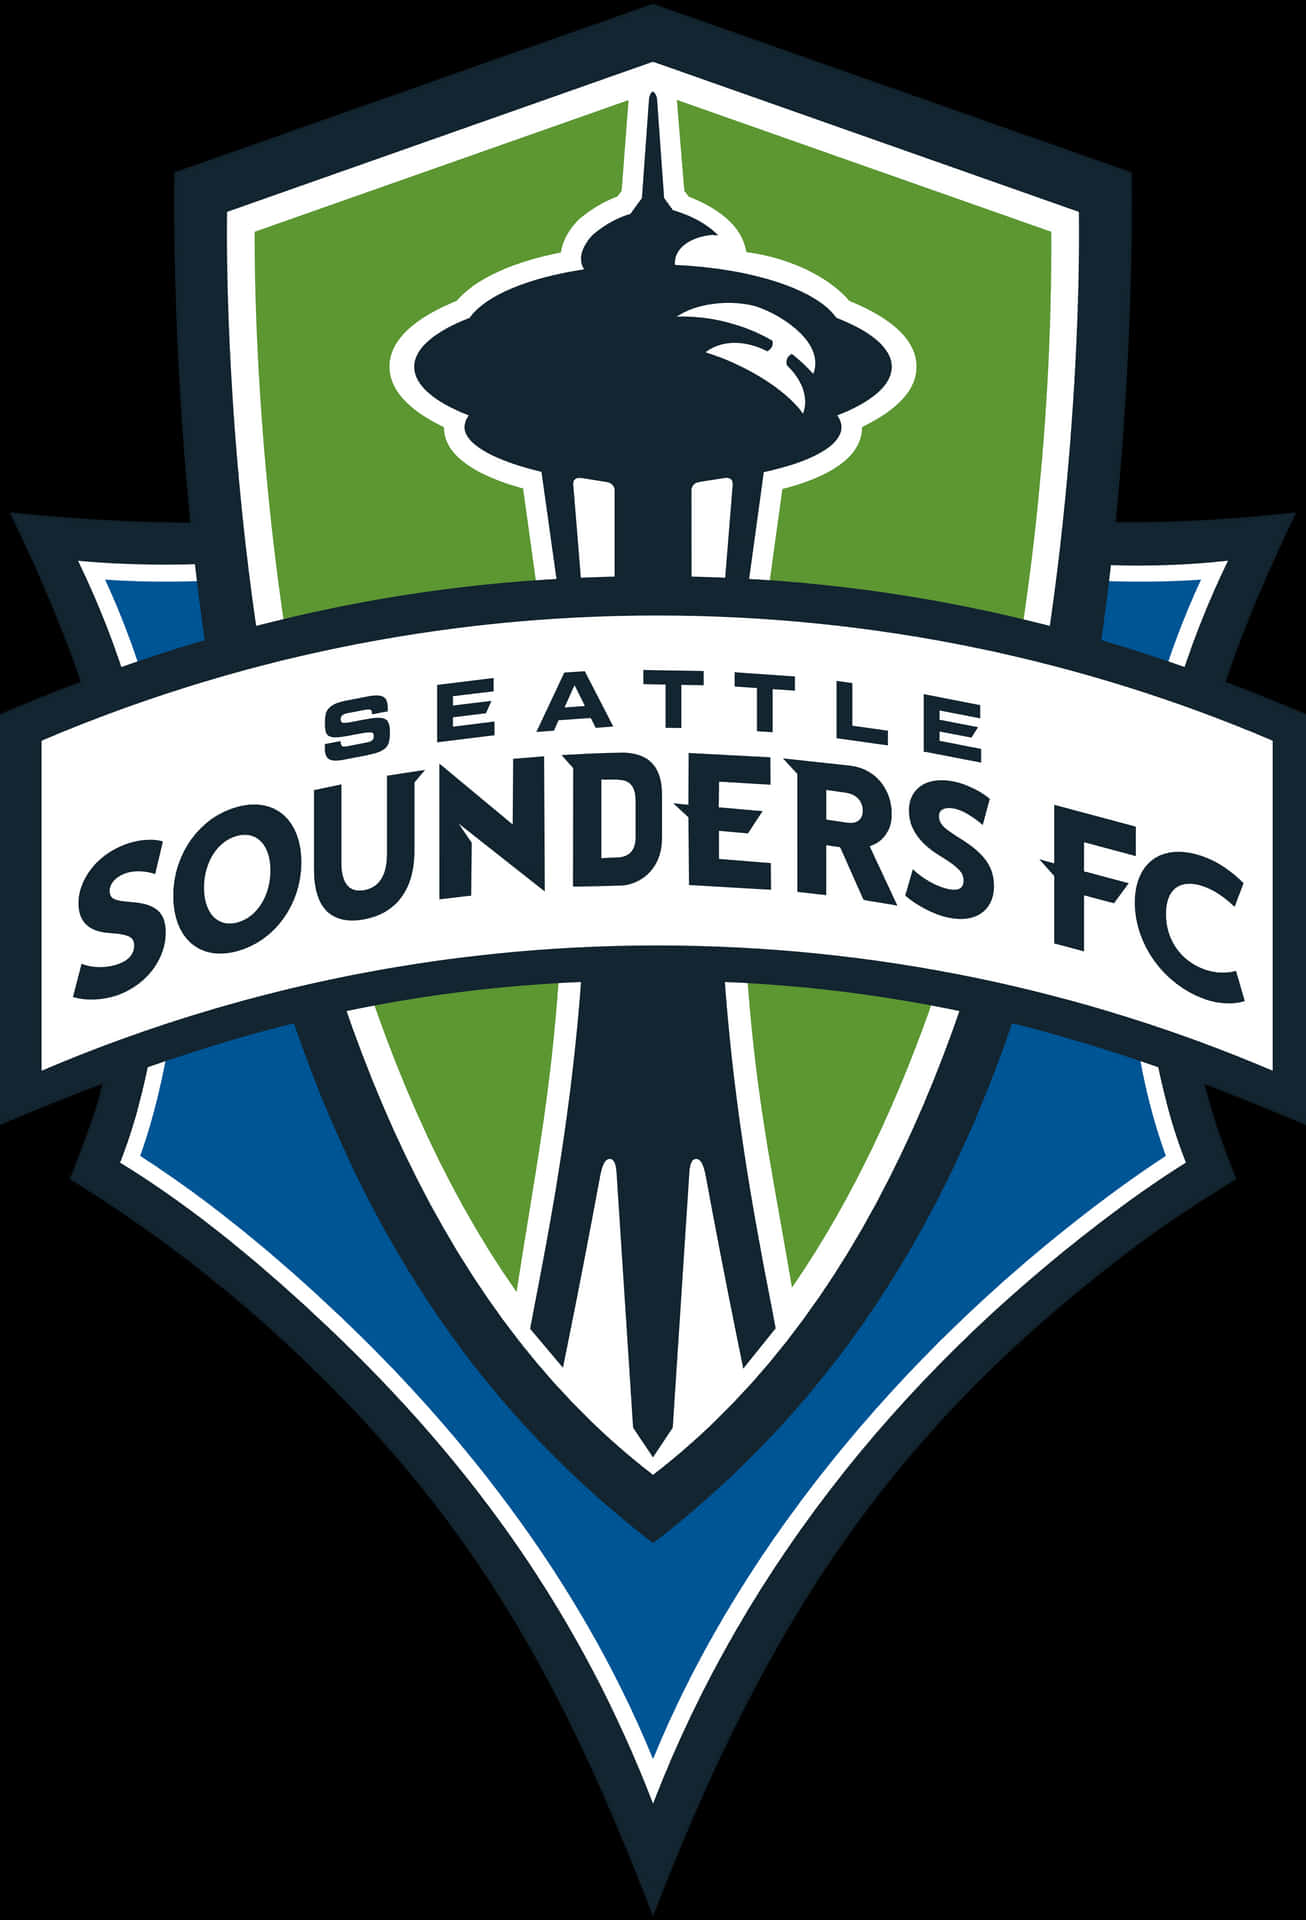 Seattlesounders Fc È Un Club Di Calcio Americano. Sfondo